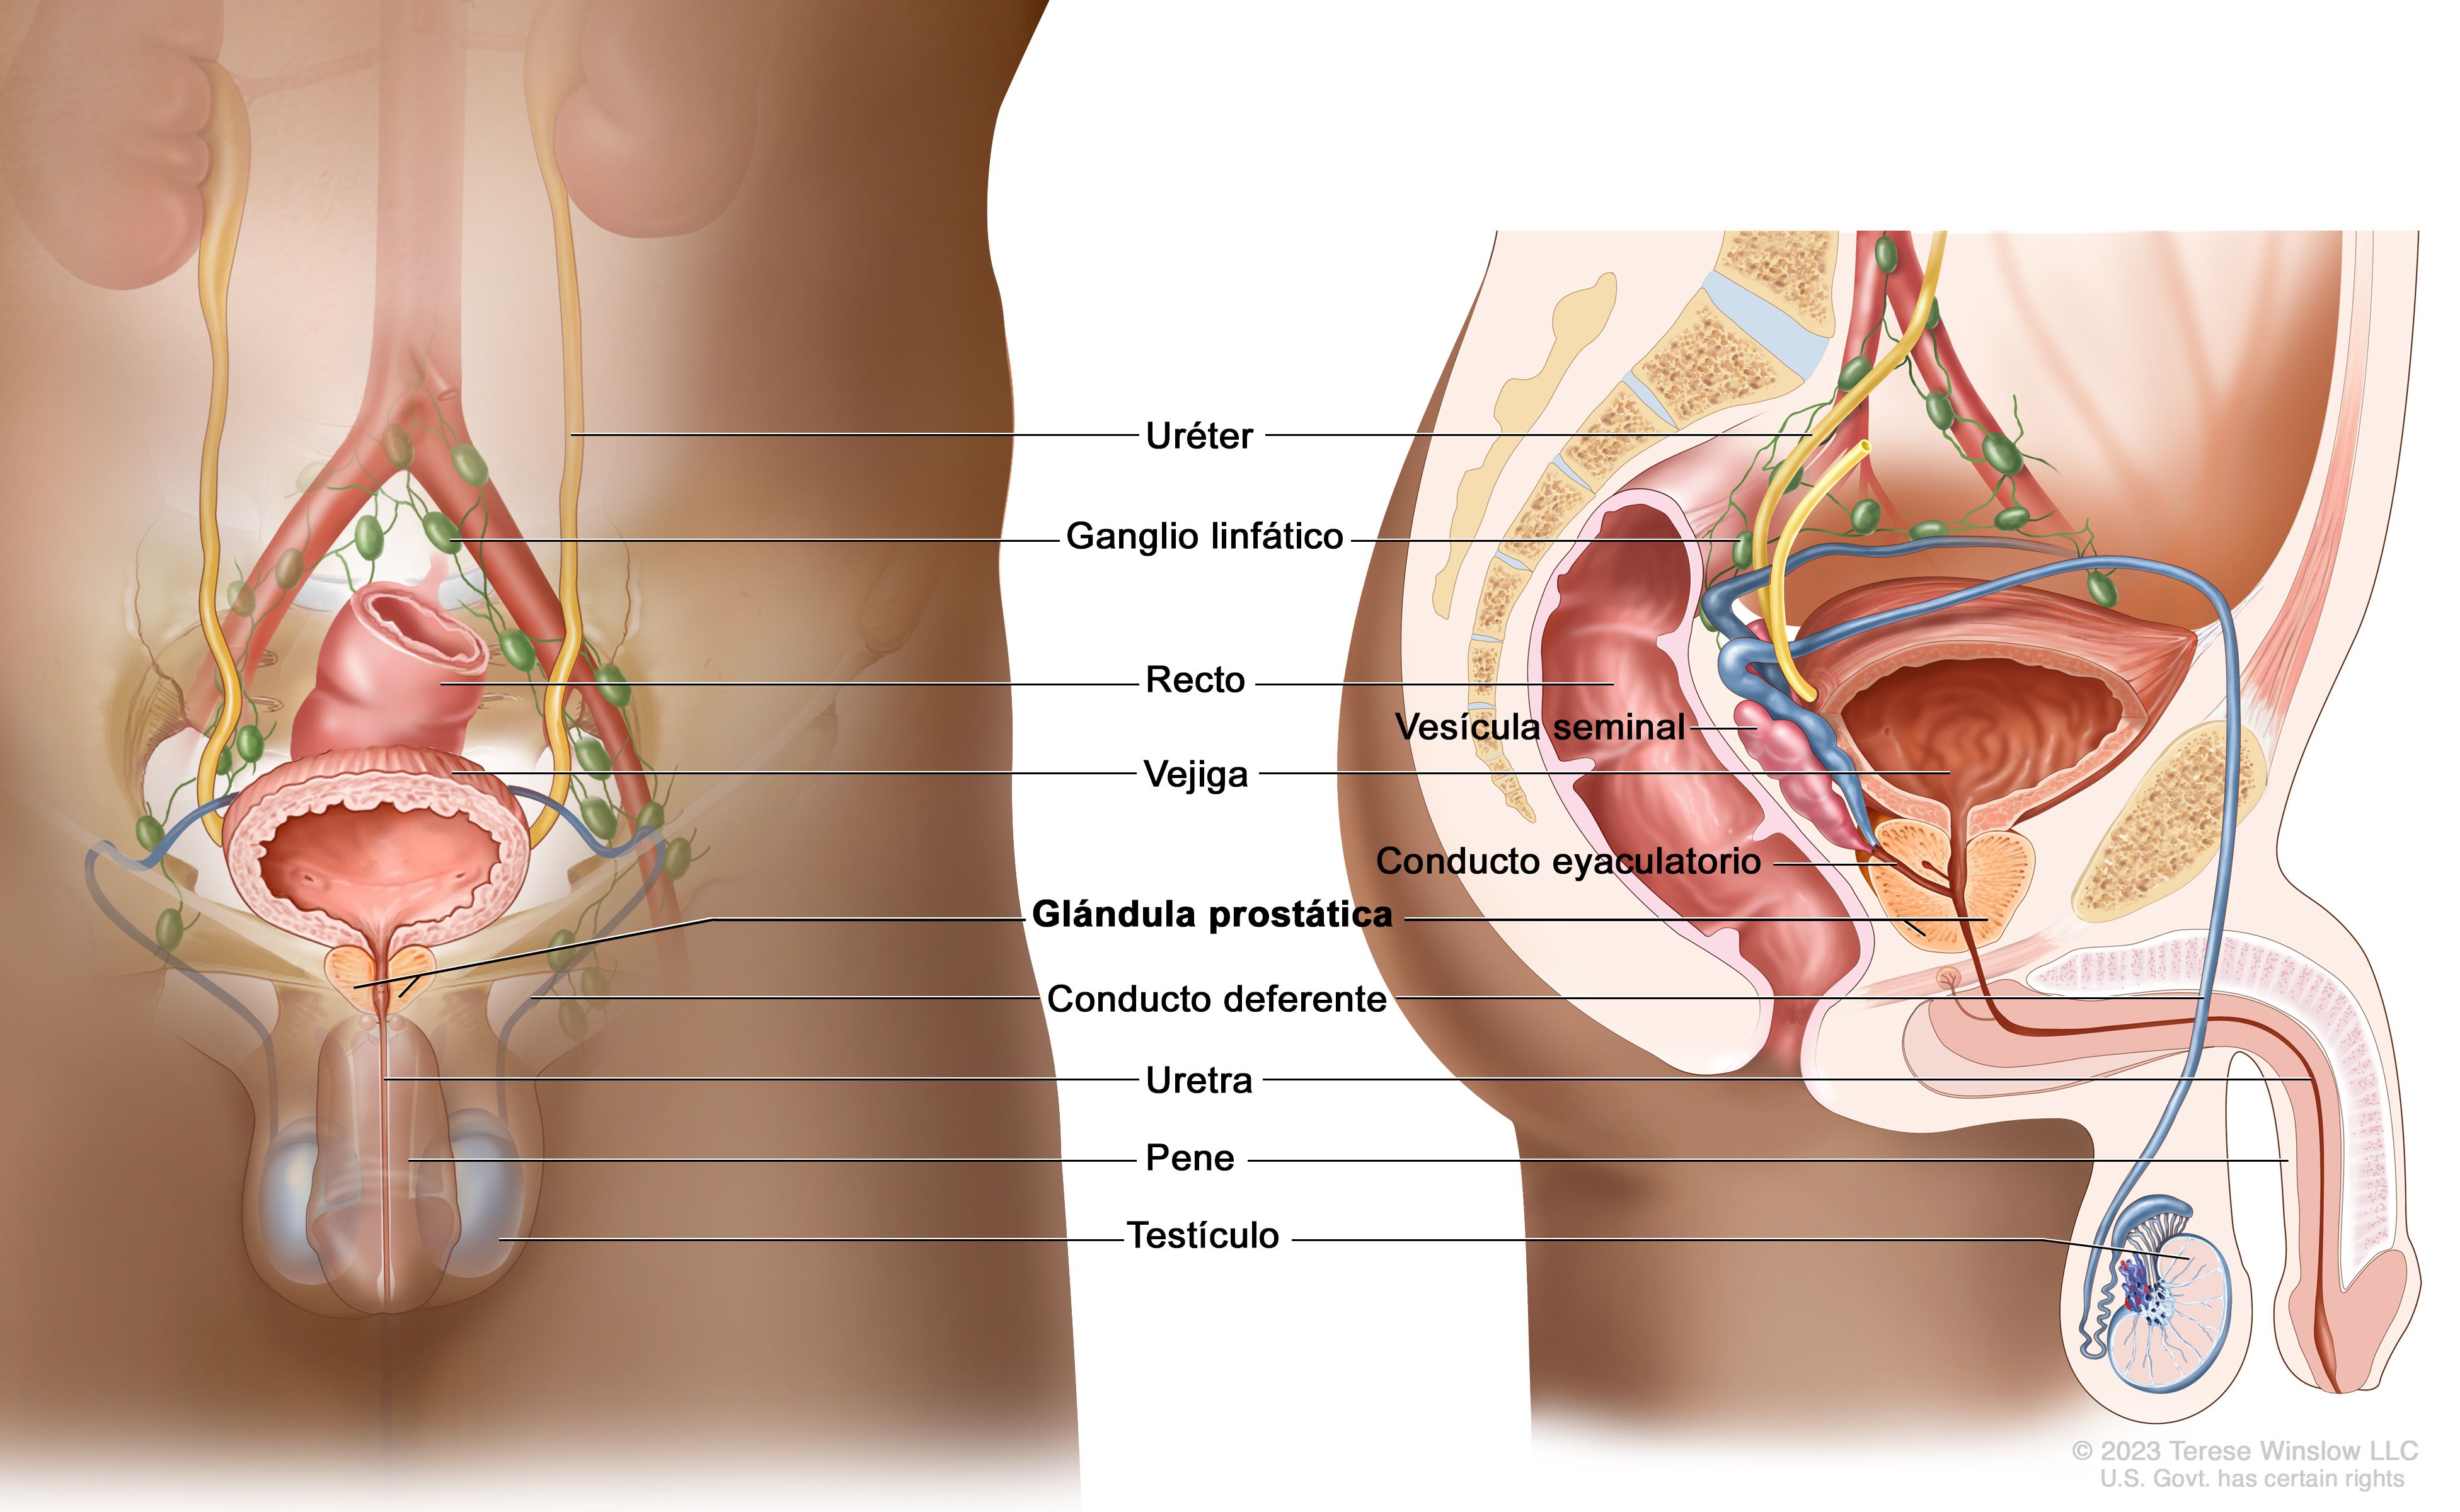 cancer de prostata medidas de prevencion